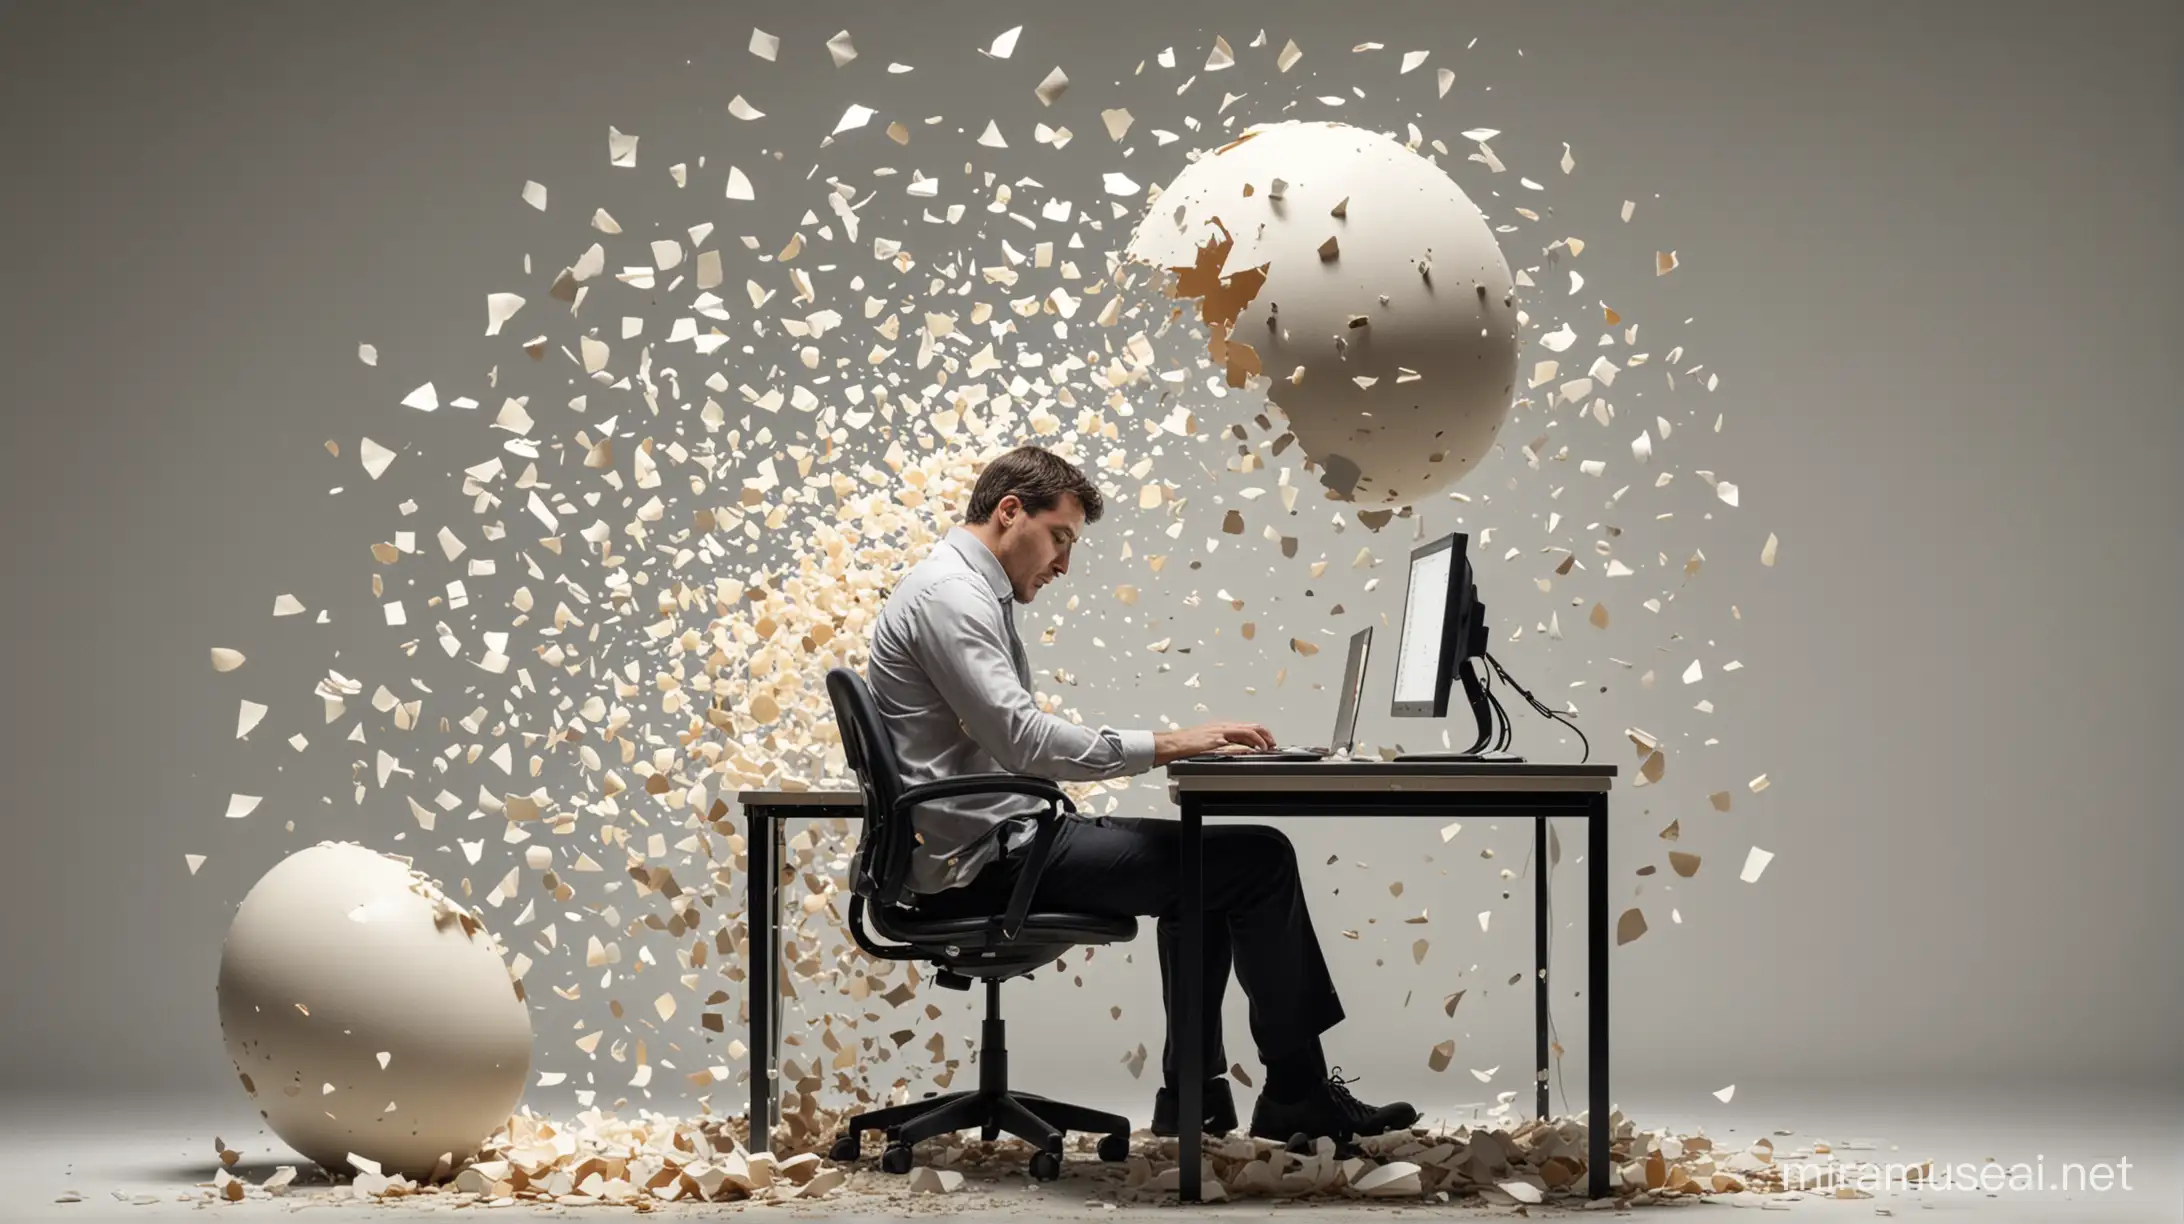 一个男人坐在电脑桌前工作，侧写，男人的身体变成鸡蛋壳，破碎，碎片掉落在地板上